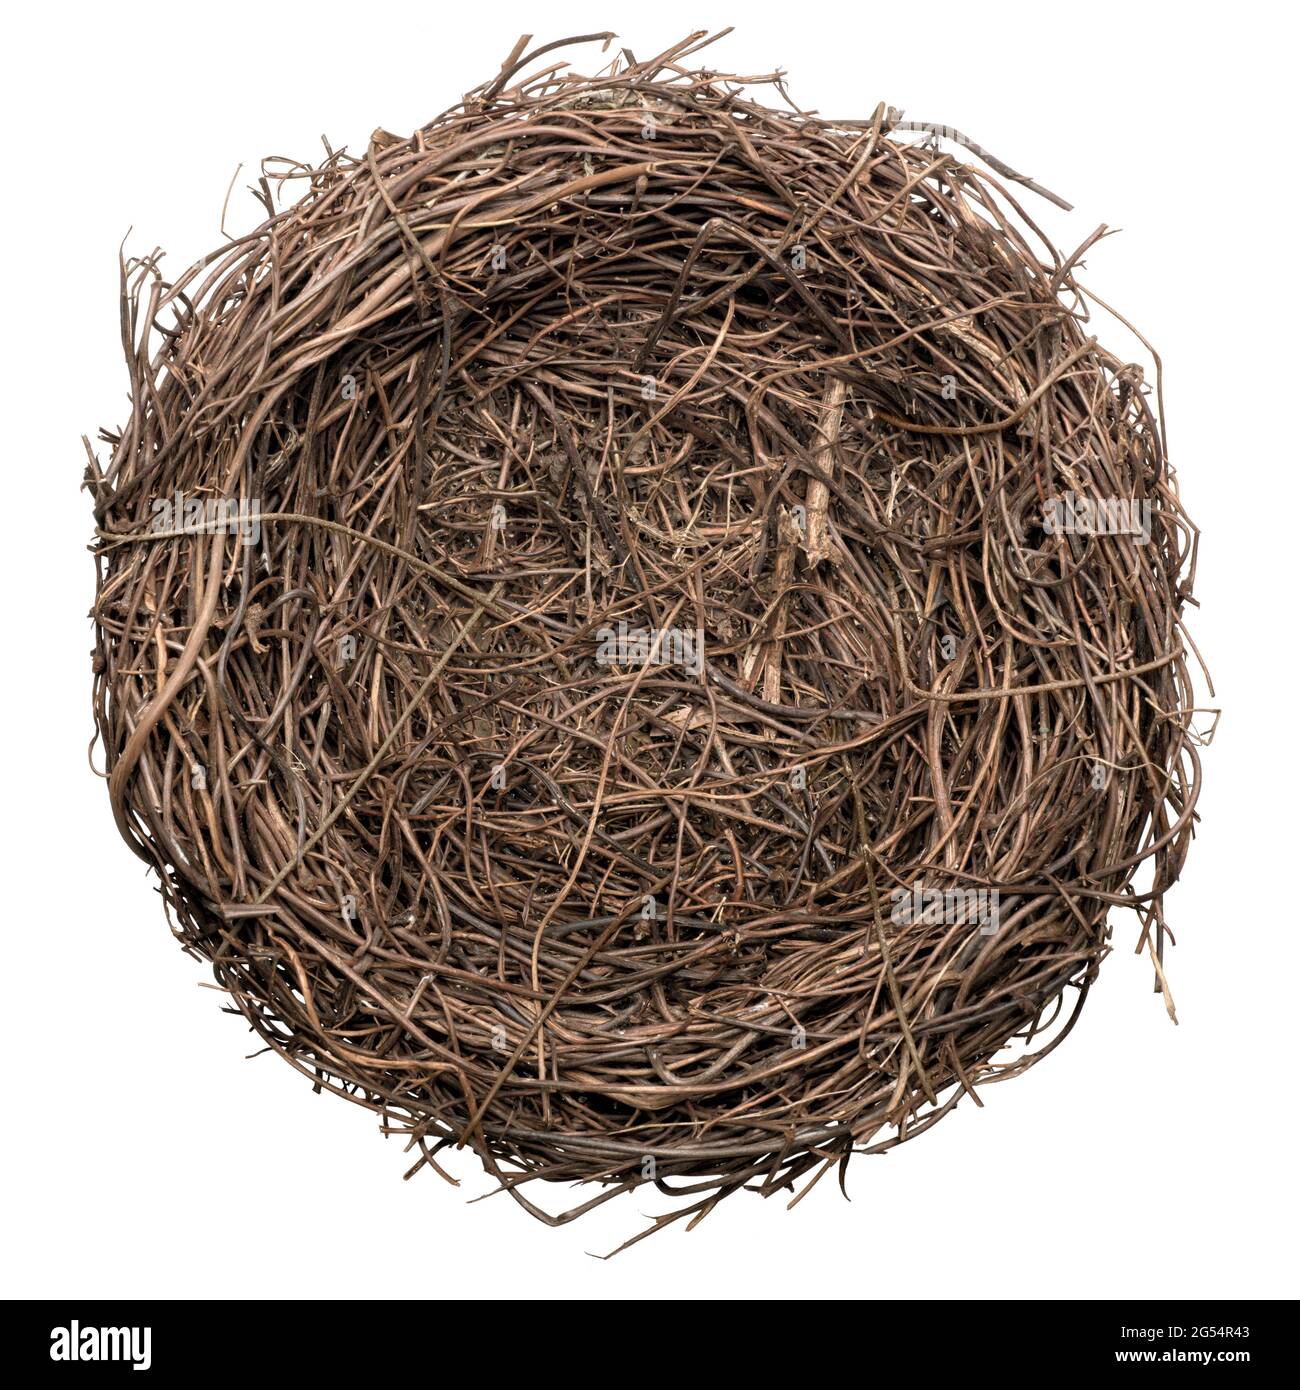 Empty bird nest, isolated on white background Stock Photo